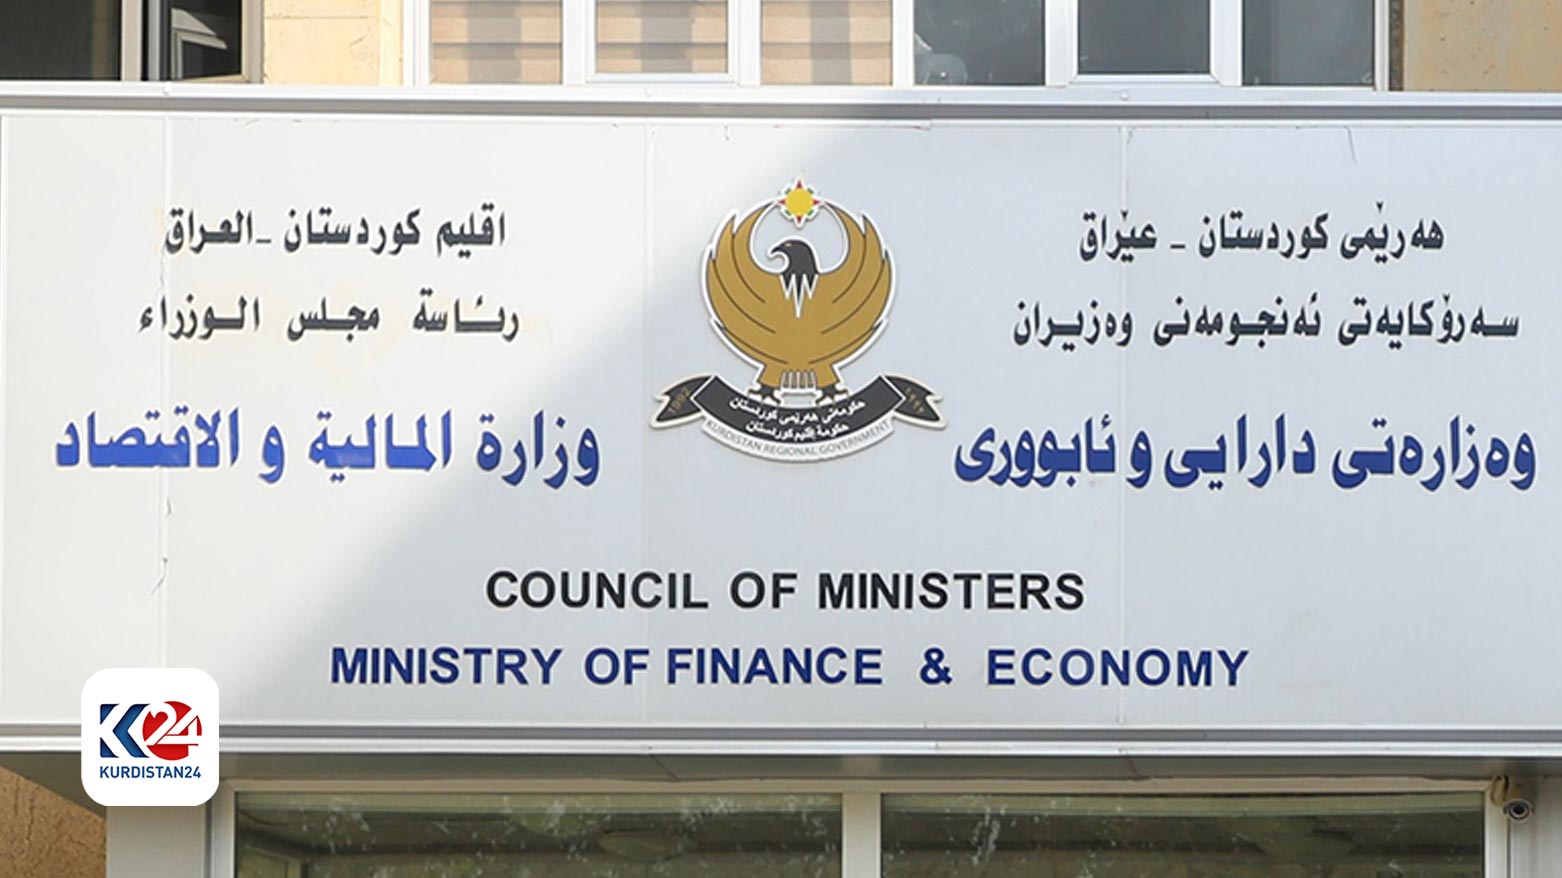 مبنى وزارة المالية والاقتصاد في حكومة كوردستان